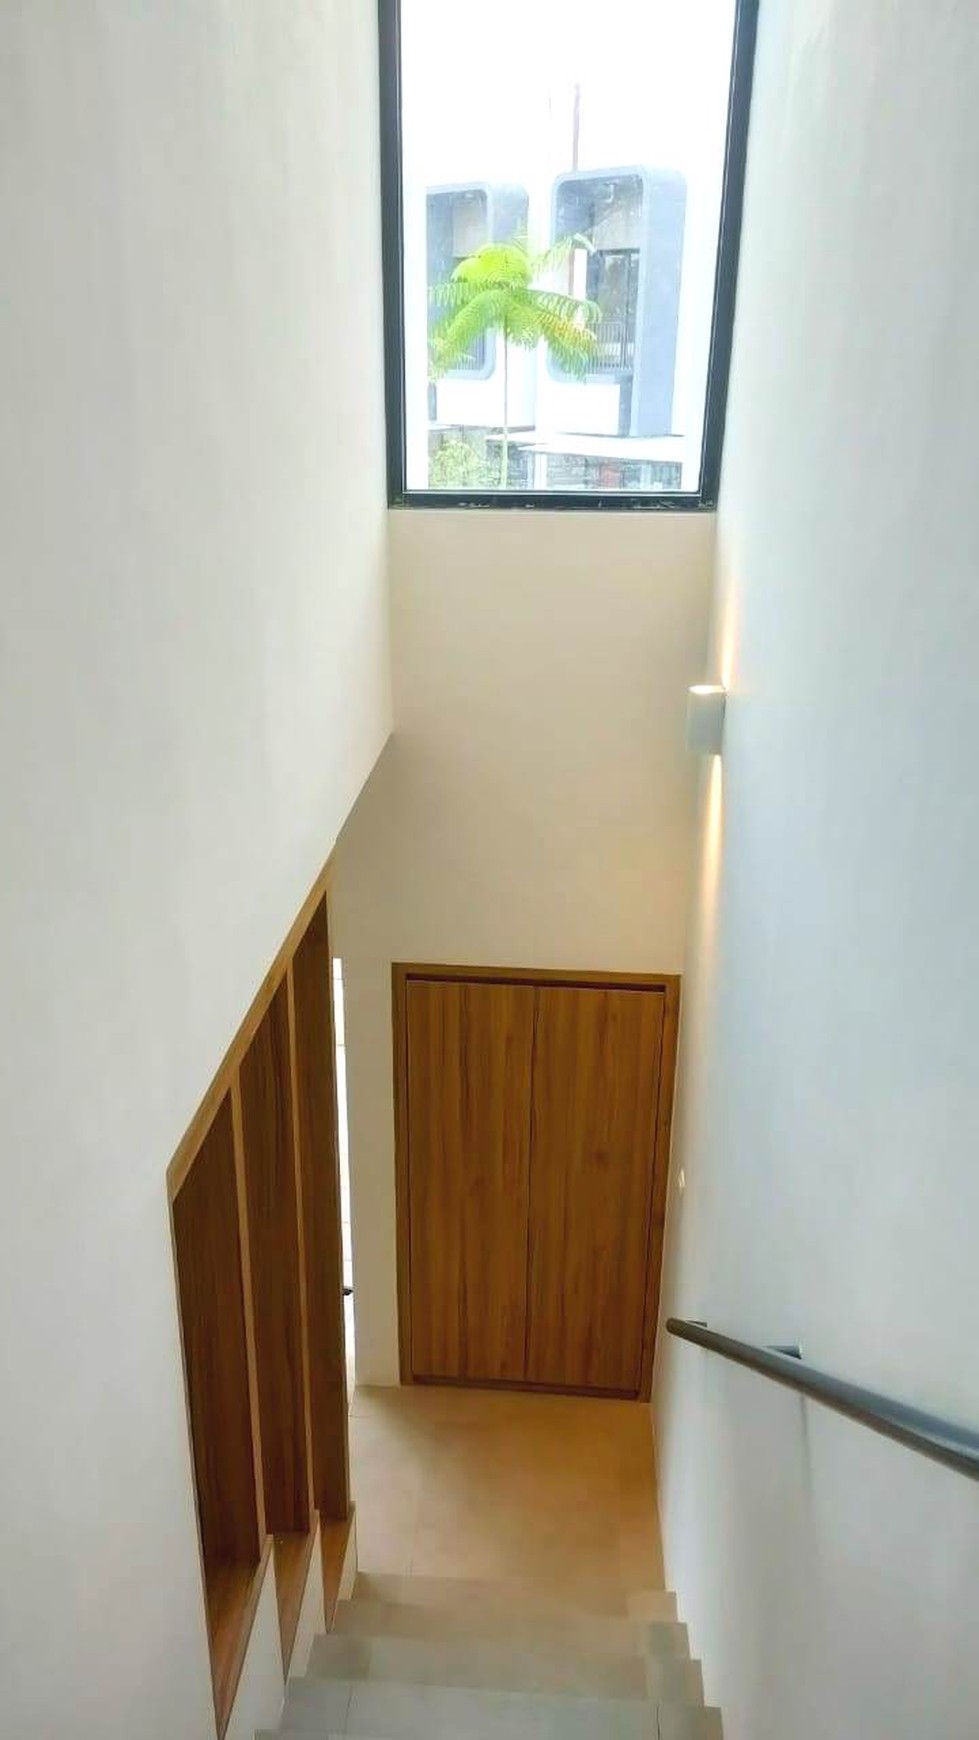 Disewakan rumah hunian minimalis modern di cluster freja BSD Tangerang